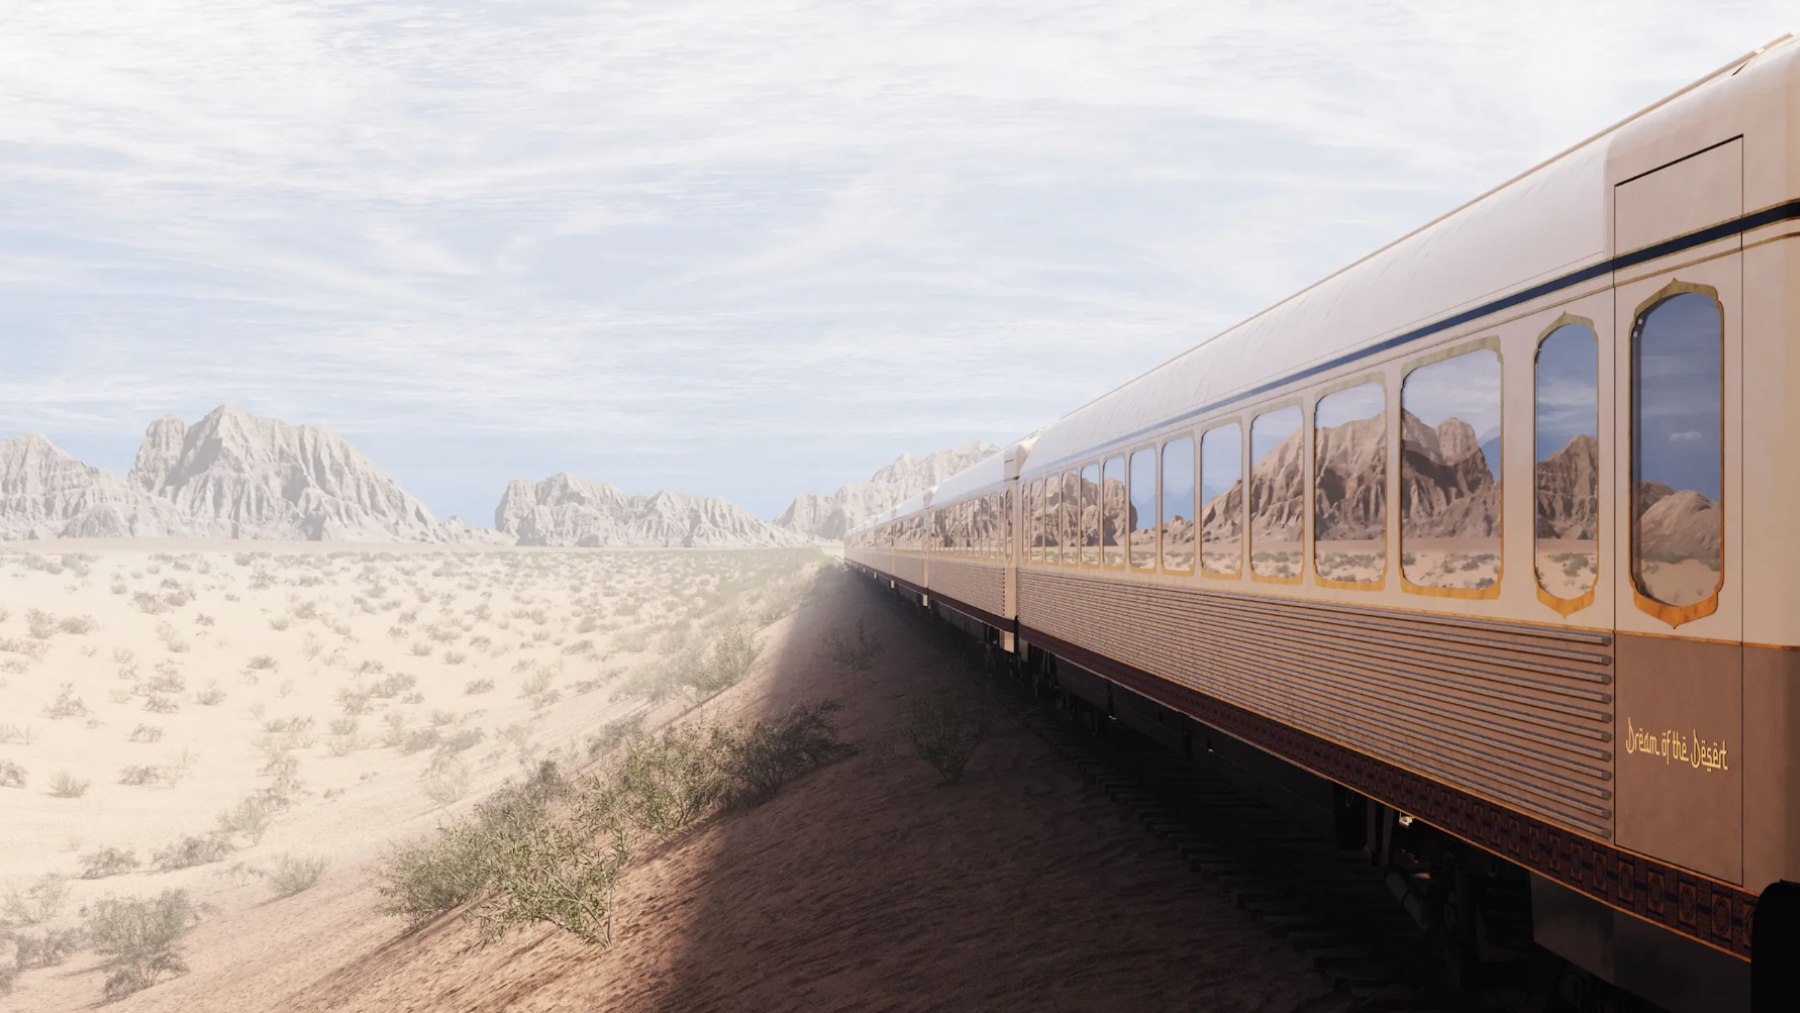 Dream of the desert train, Arsenale Group